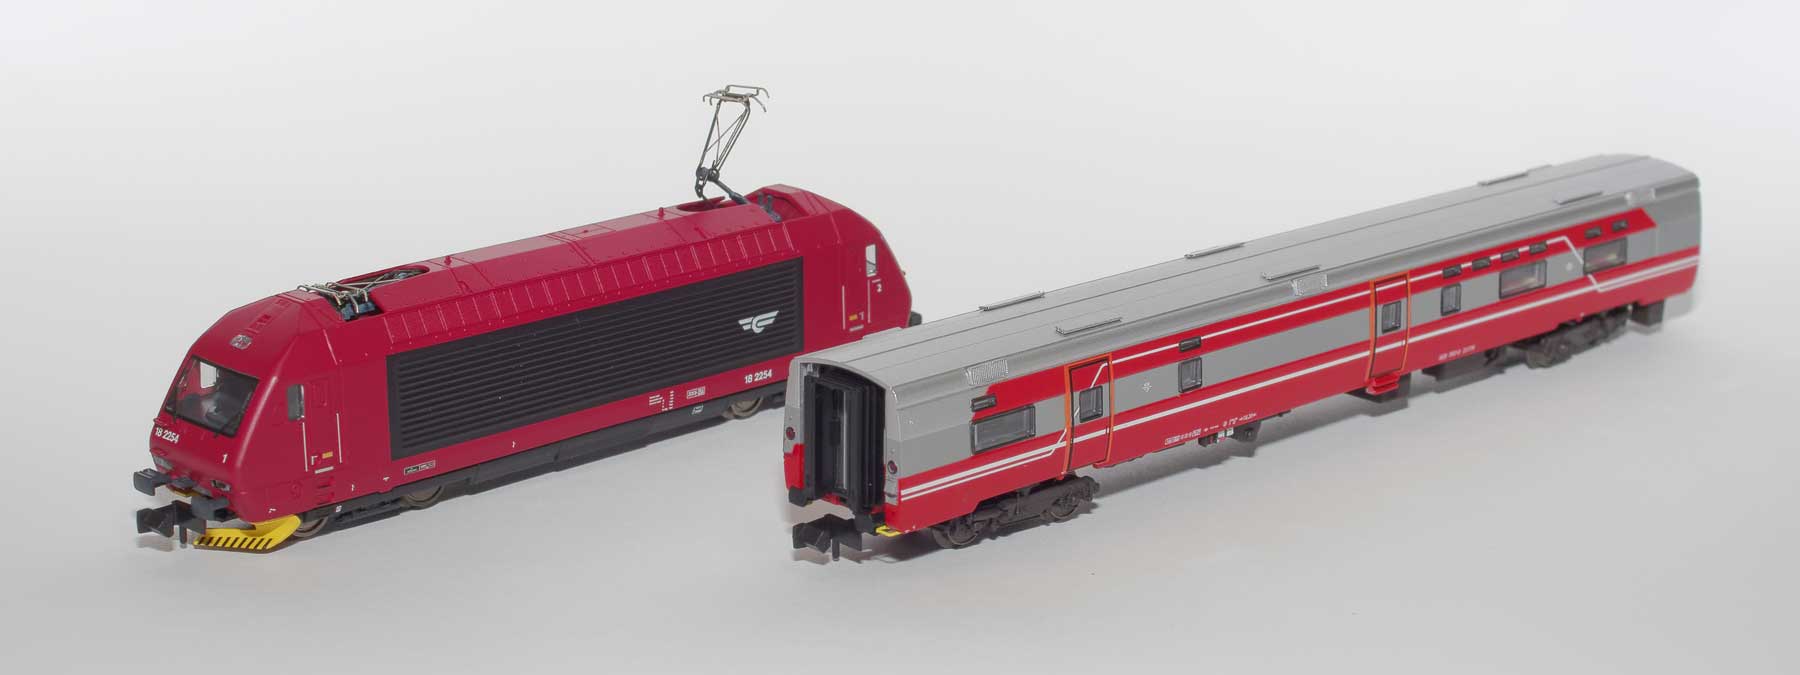 Set 18003: NSB express train dining car FR7-3 with loco El 18